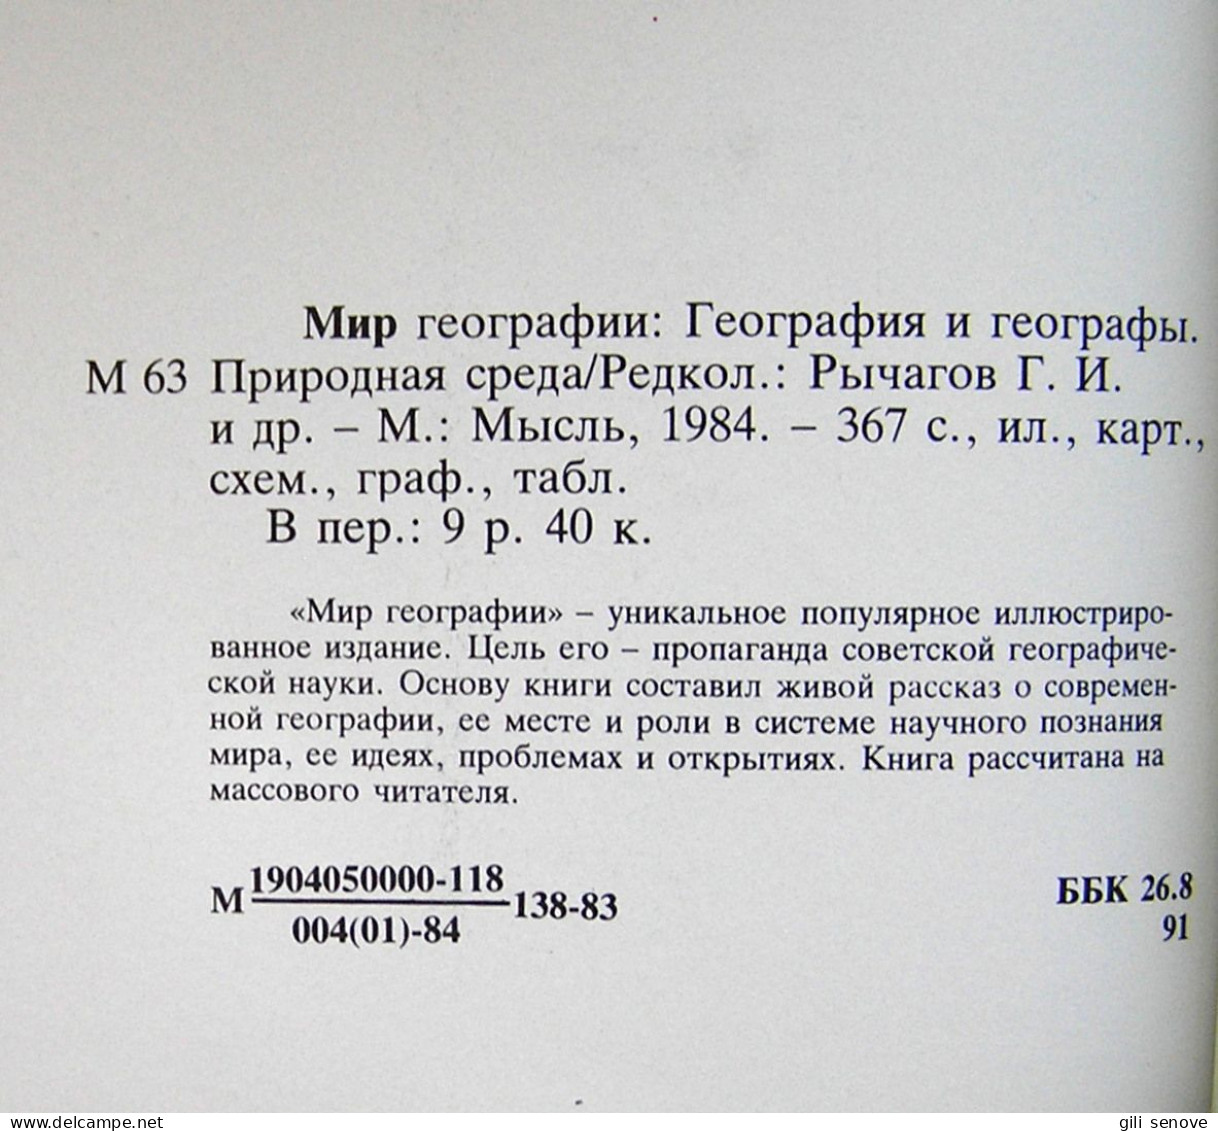 Russian Book / Мир географии 1984 - Lingue Slave